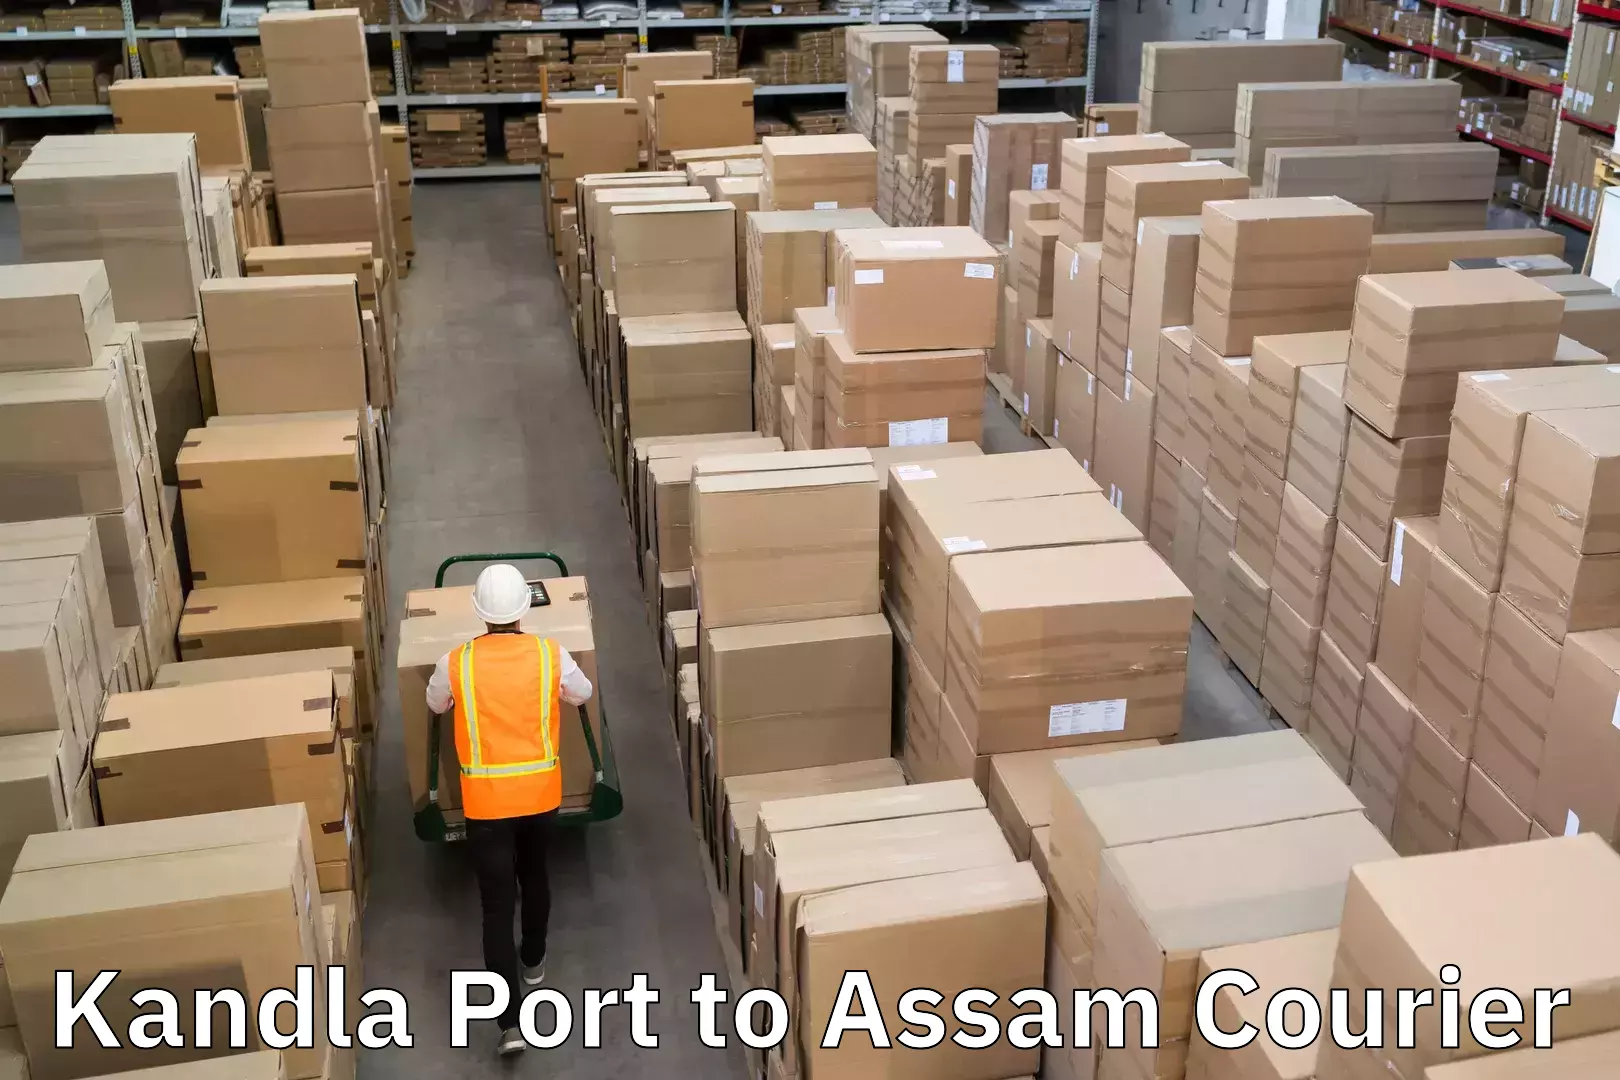 Easy return solutions Kandla Port to Assam